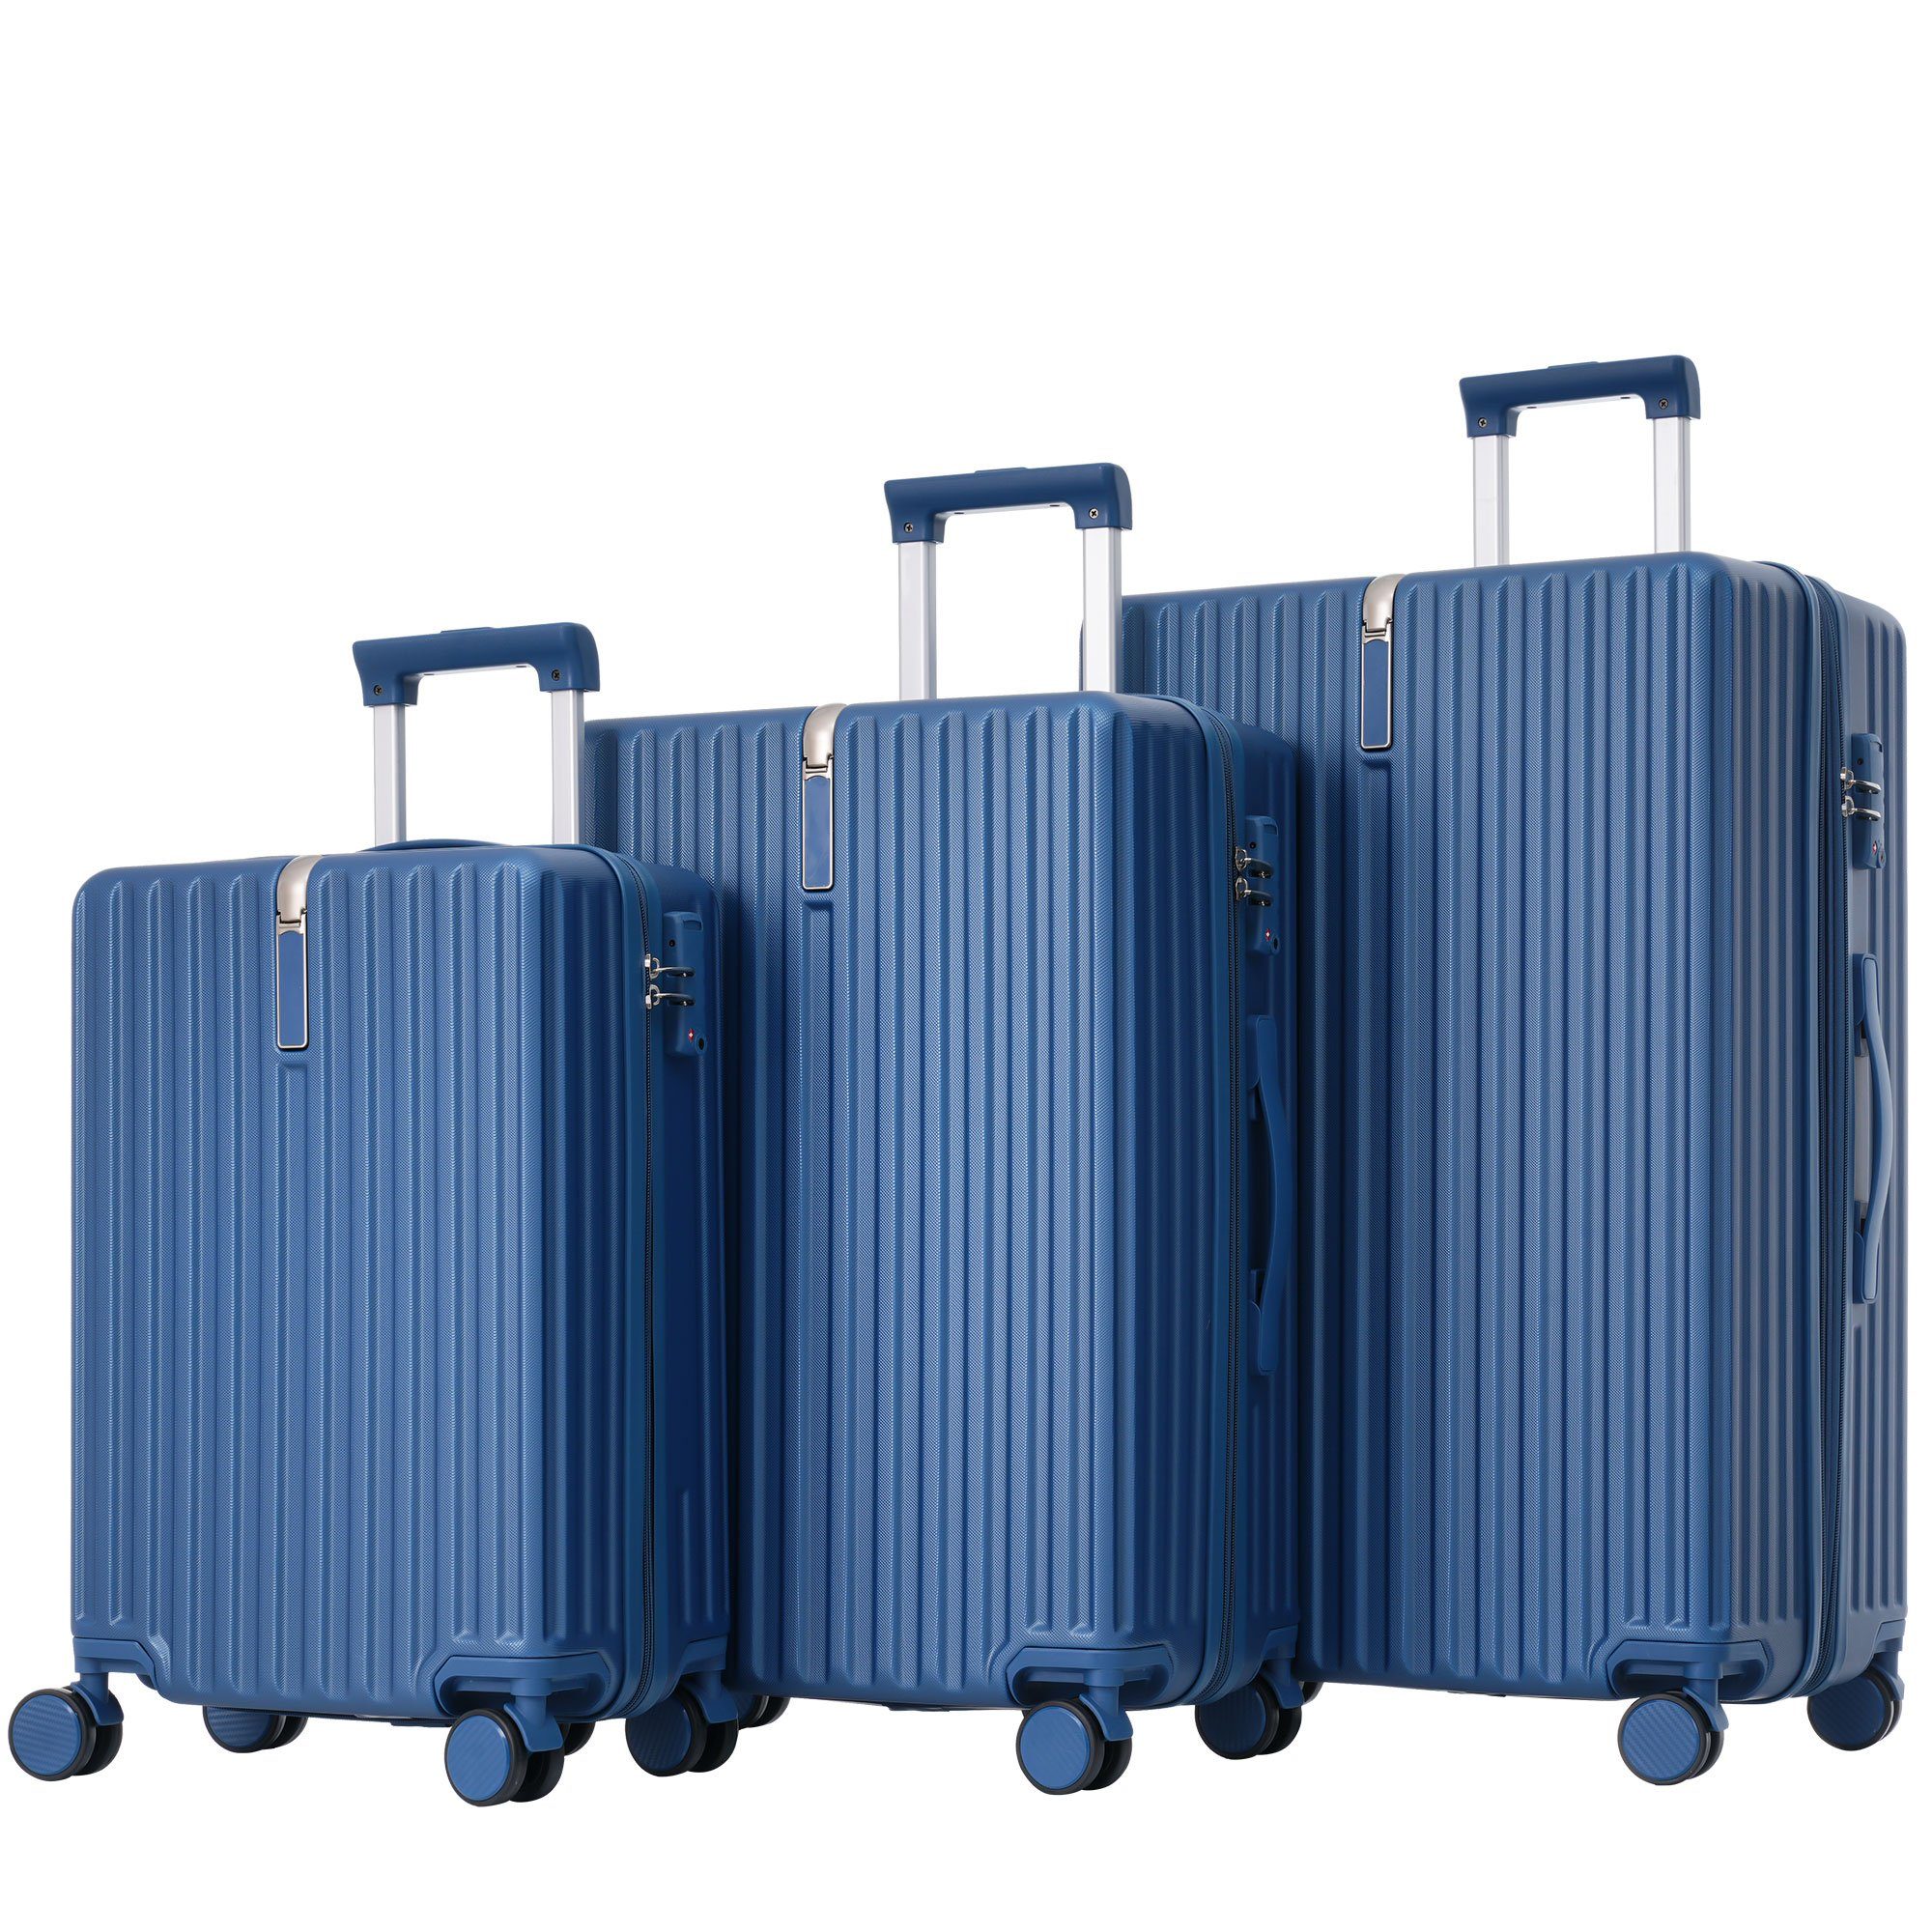 Ulife Trolleyset Kofferset Handgepäck Reisekoffer ABS-Material, TSA Zollschloss, 4 Rollen, (3 tlg) Blau